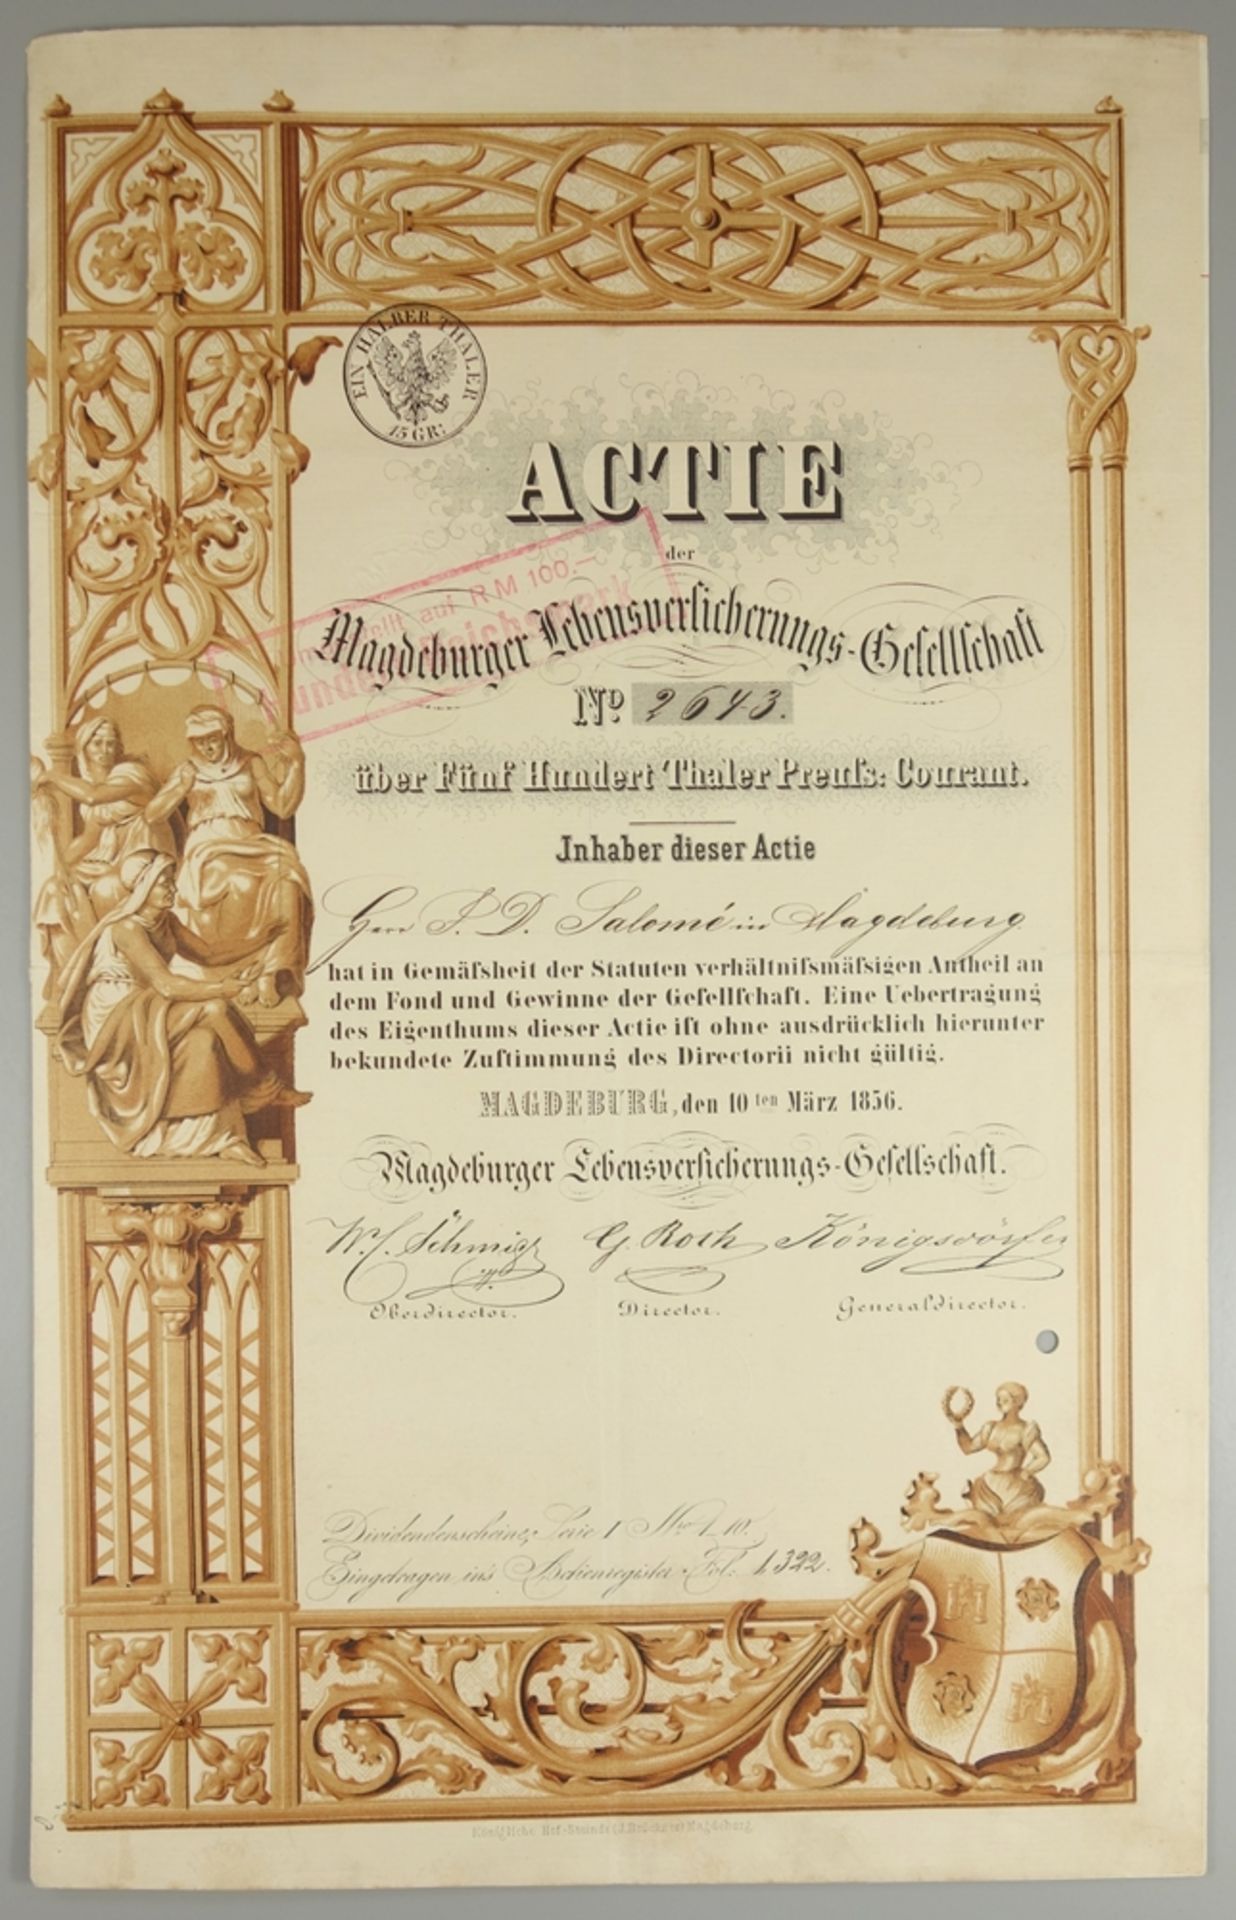 Aktie "Magdeburger Lebensversicherungs-Gesellschaft", 10.März 1856, Gründeraktie über 500 Thaler